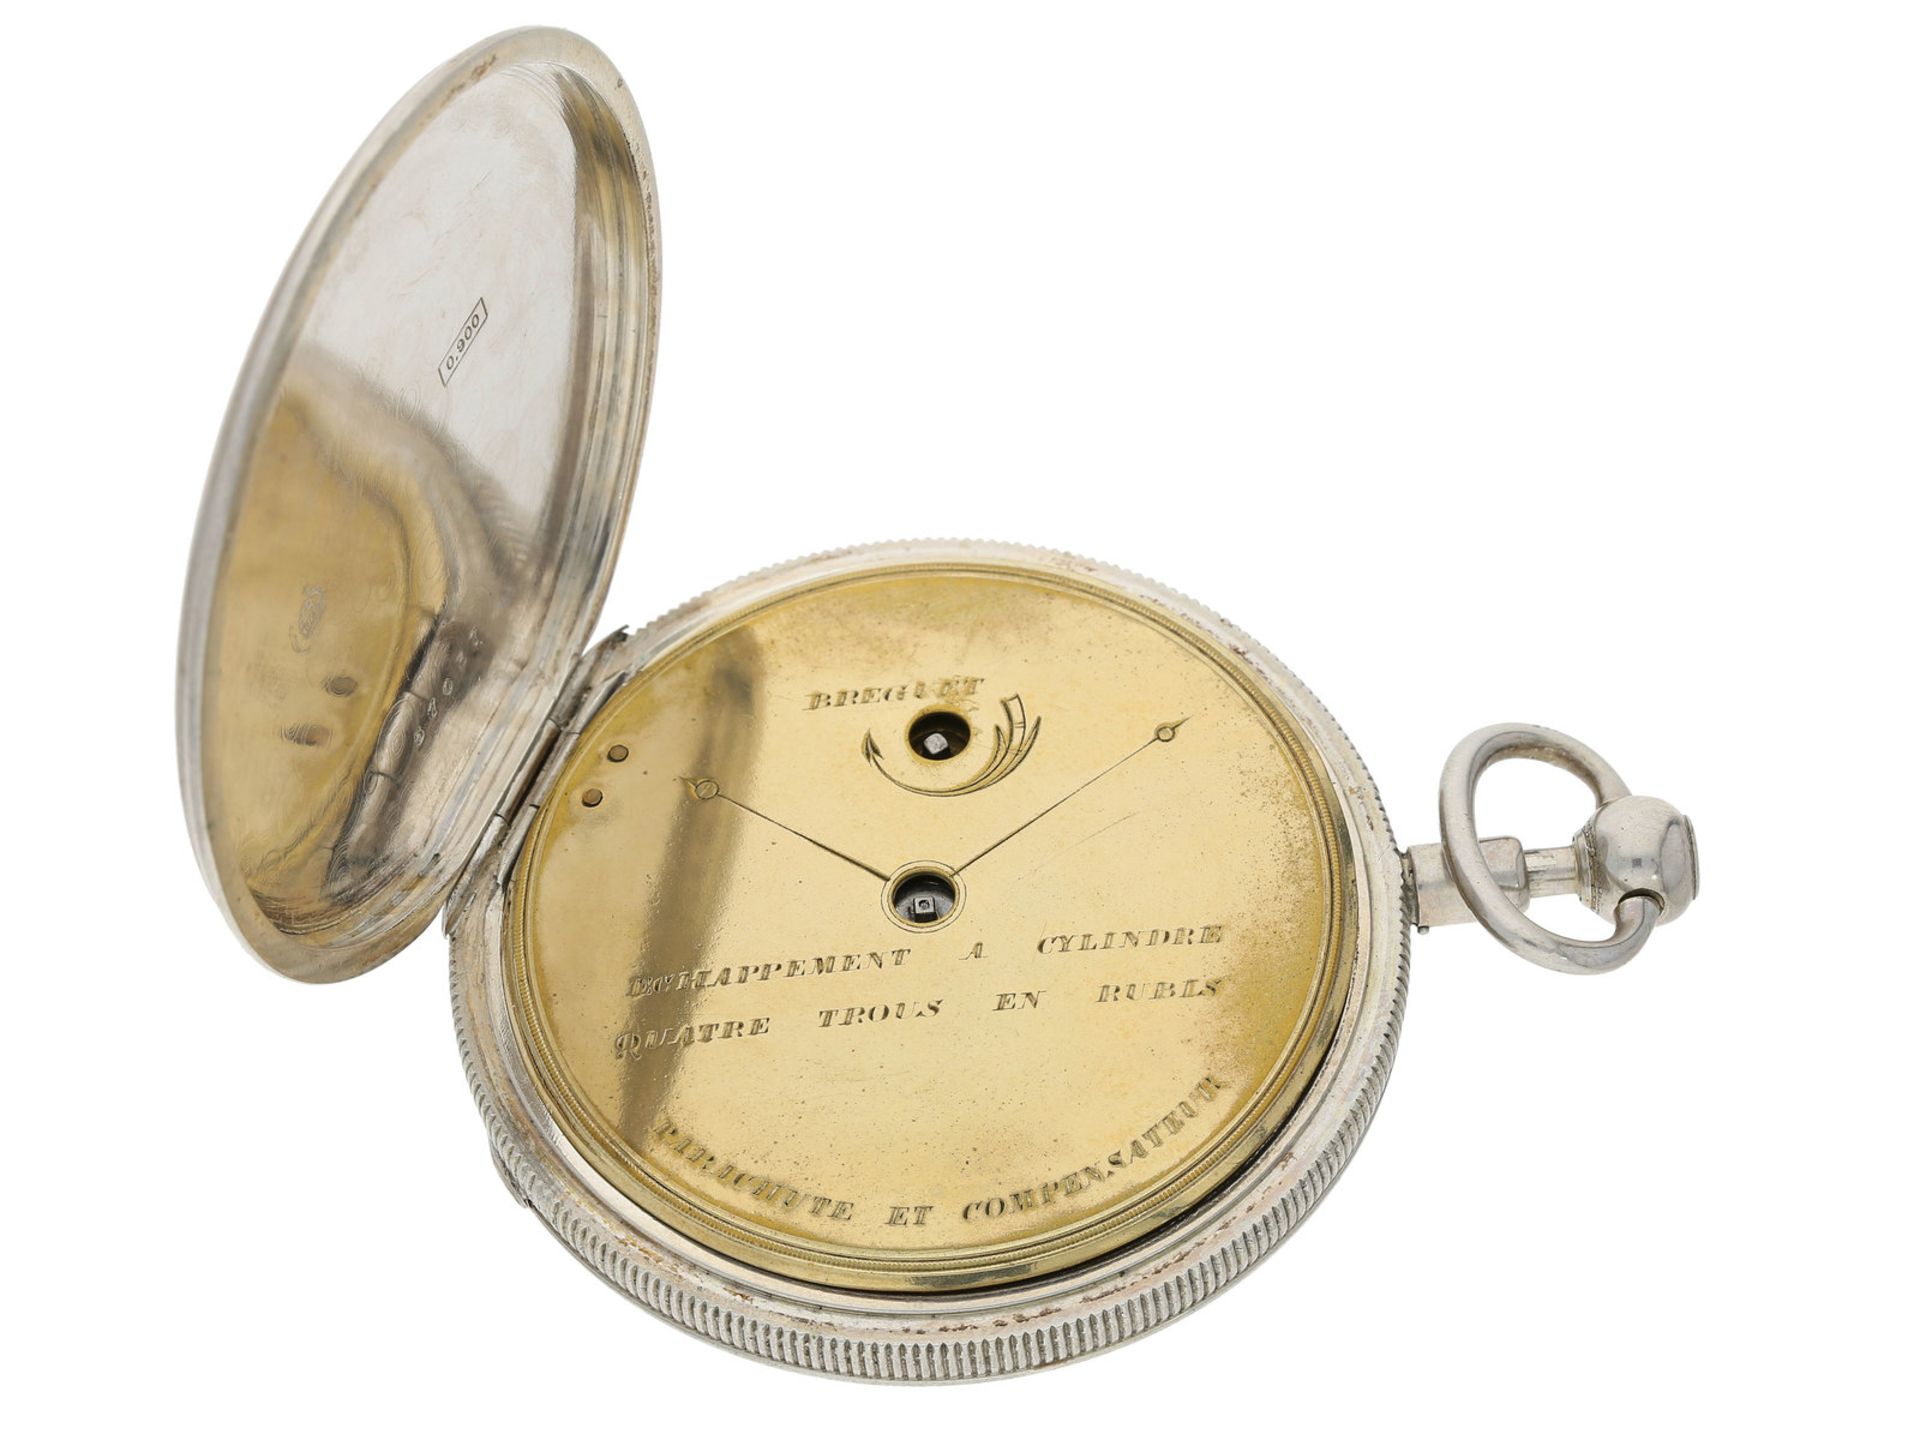 Taschenuhr: sehr attraktive und große Taschenuhr mit 1/4h-Repetition, ca. 1850 - Bild 3 aus 4